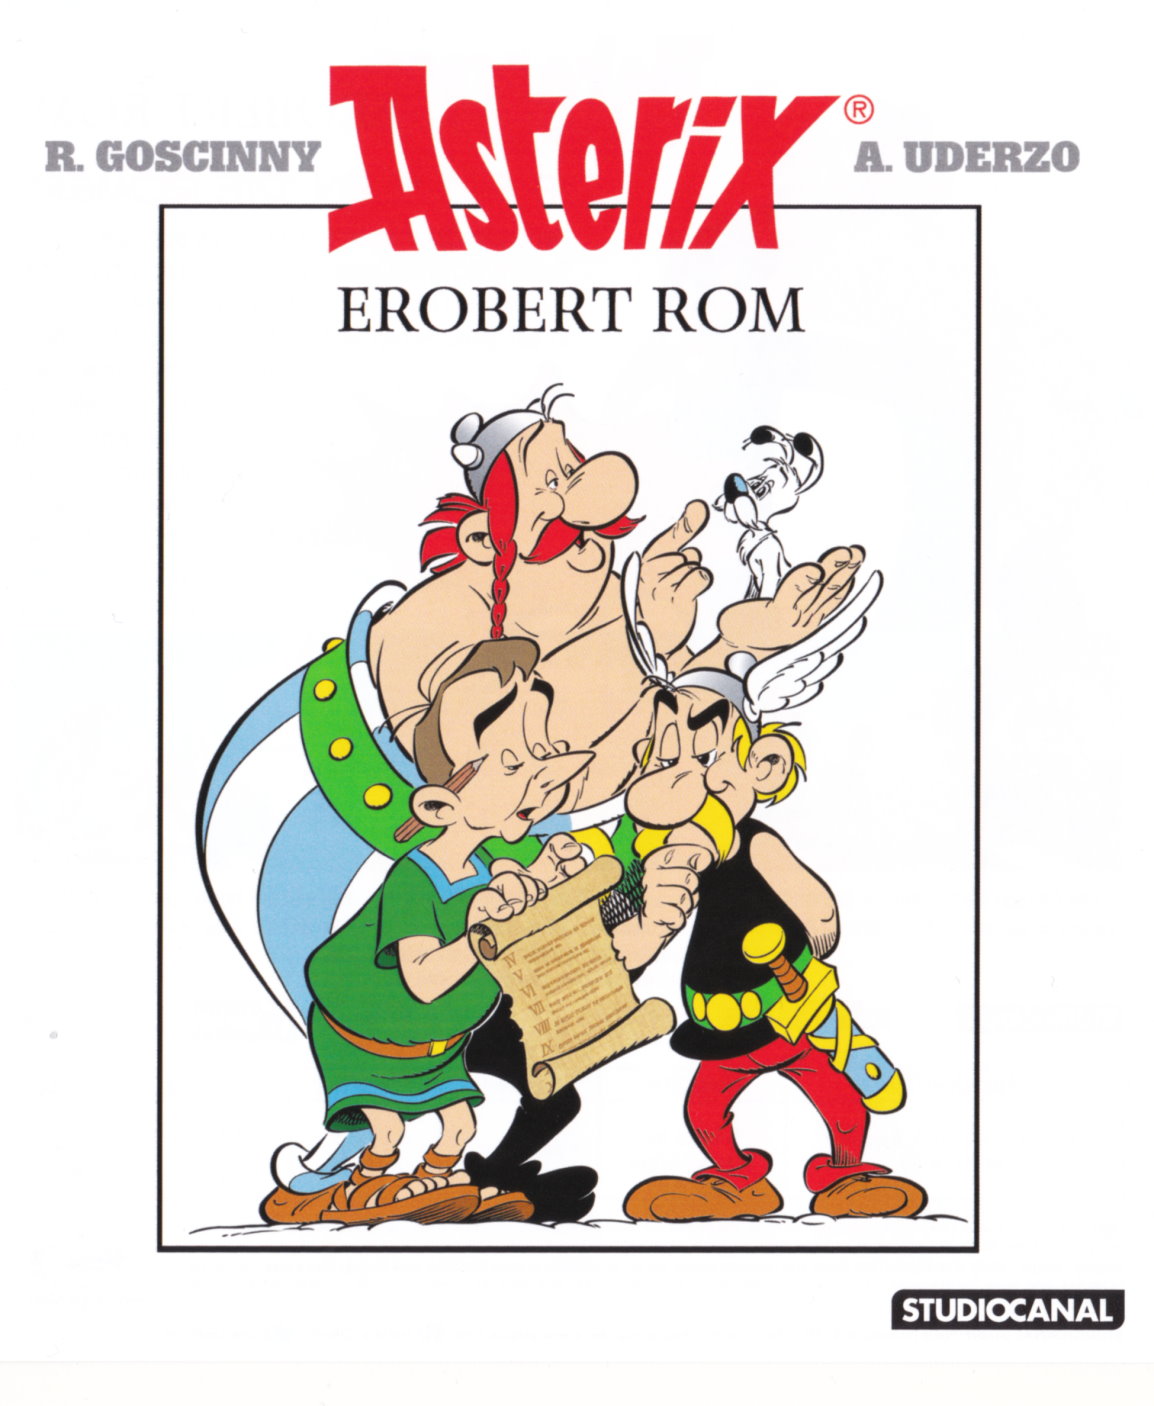 Cover - Asterix erobert Rom.jpg